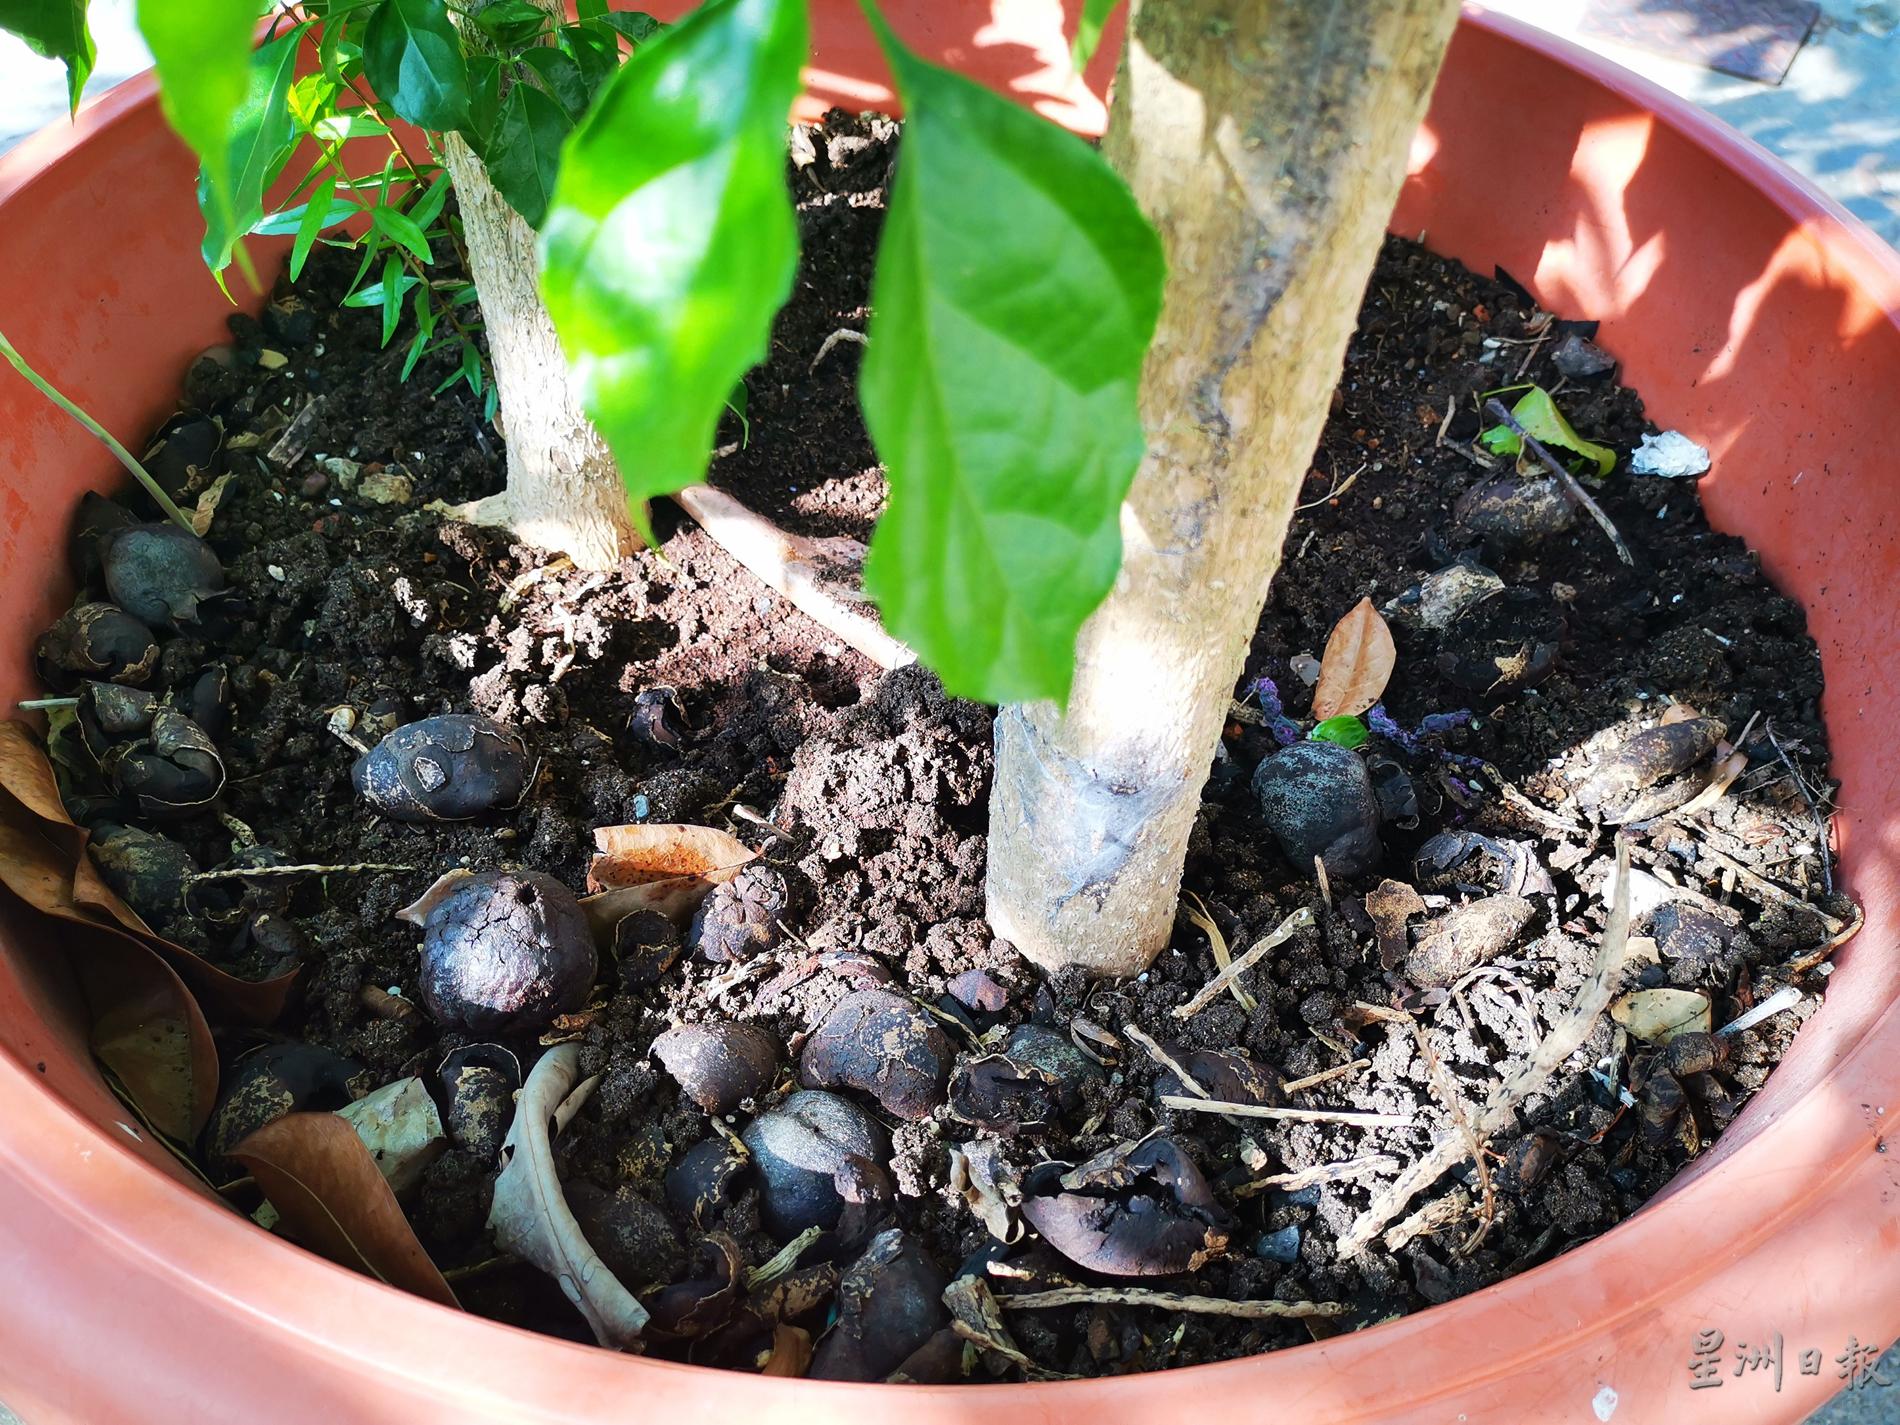 用蚯蚓粪、燕子粪及水果果皮施肥，以让土壤肥沃。

